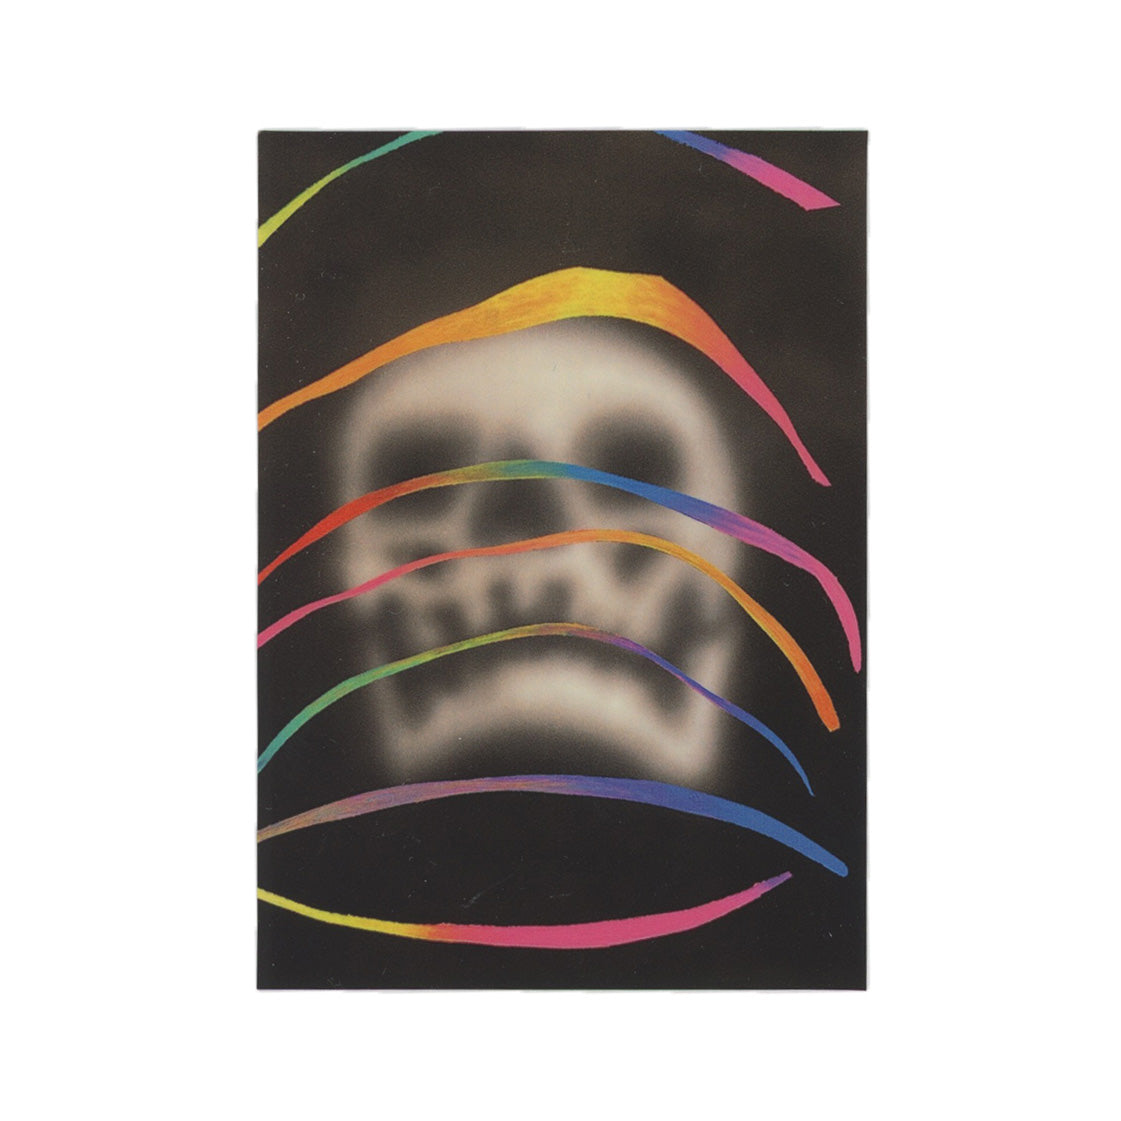 Erik Foss Blurry Skull Sticker